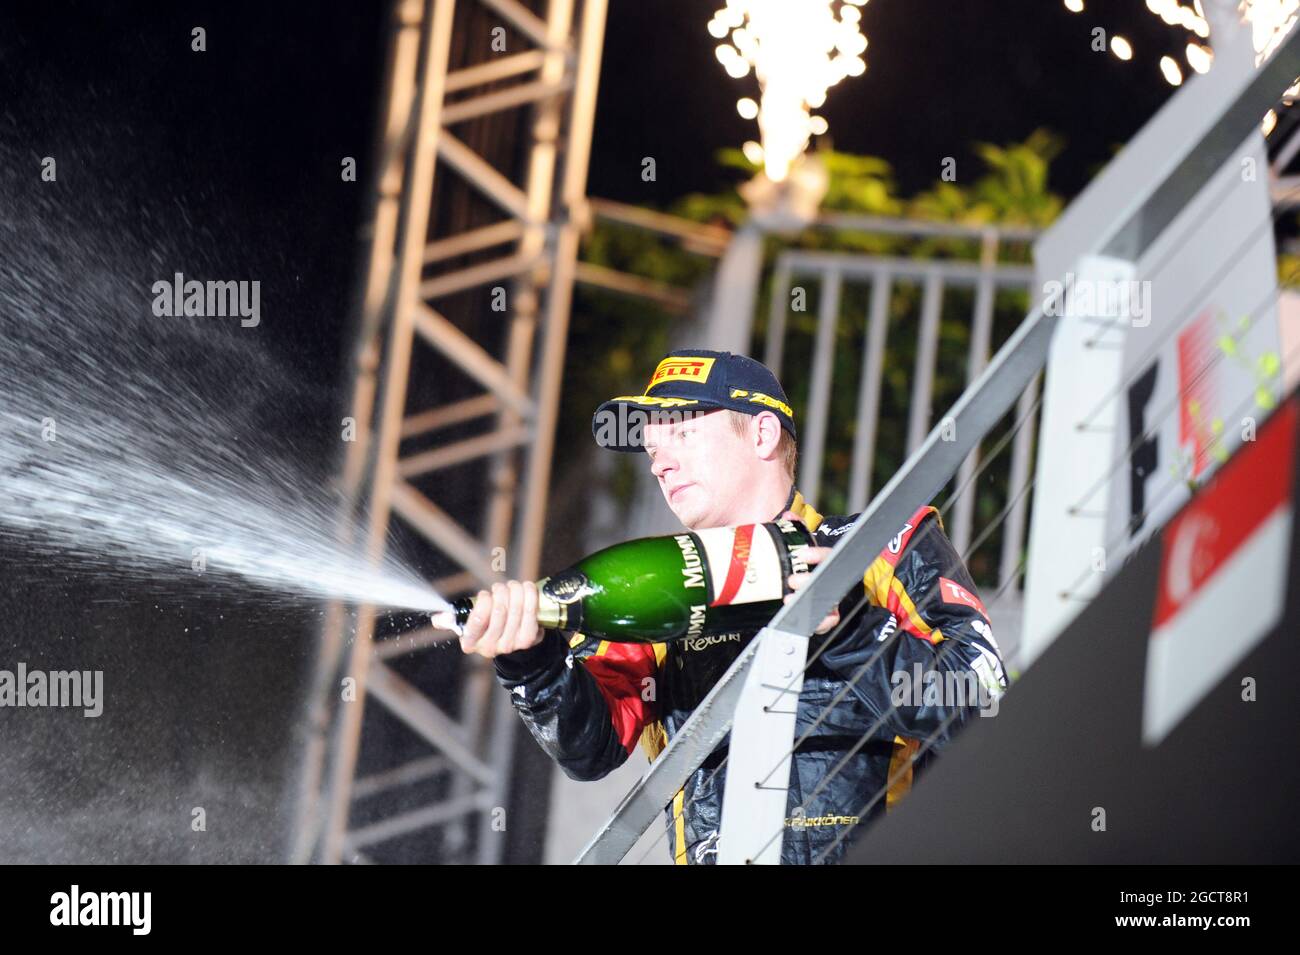 Kimi Raikkonen (fin) Lotus F1 Team festeggia la sua terza posizione sul podio. Gran Premio di Singapore, domenica 22 settembre 2013. Circuito Marina Bay Street, Singapore. Foto Stock